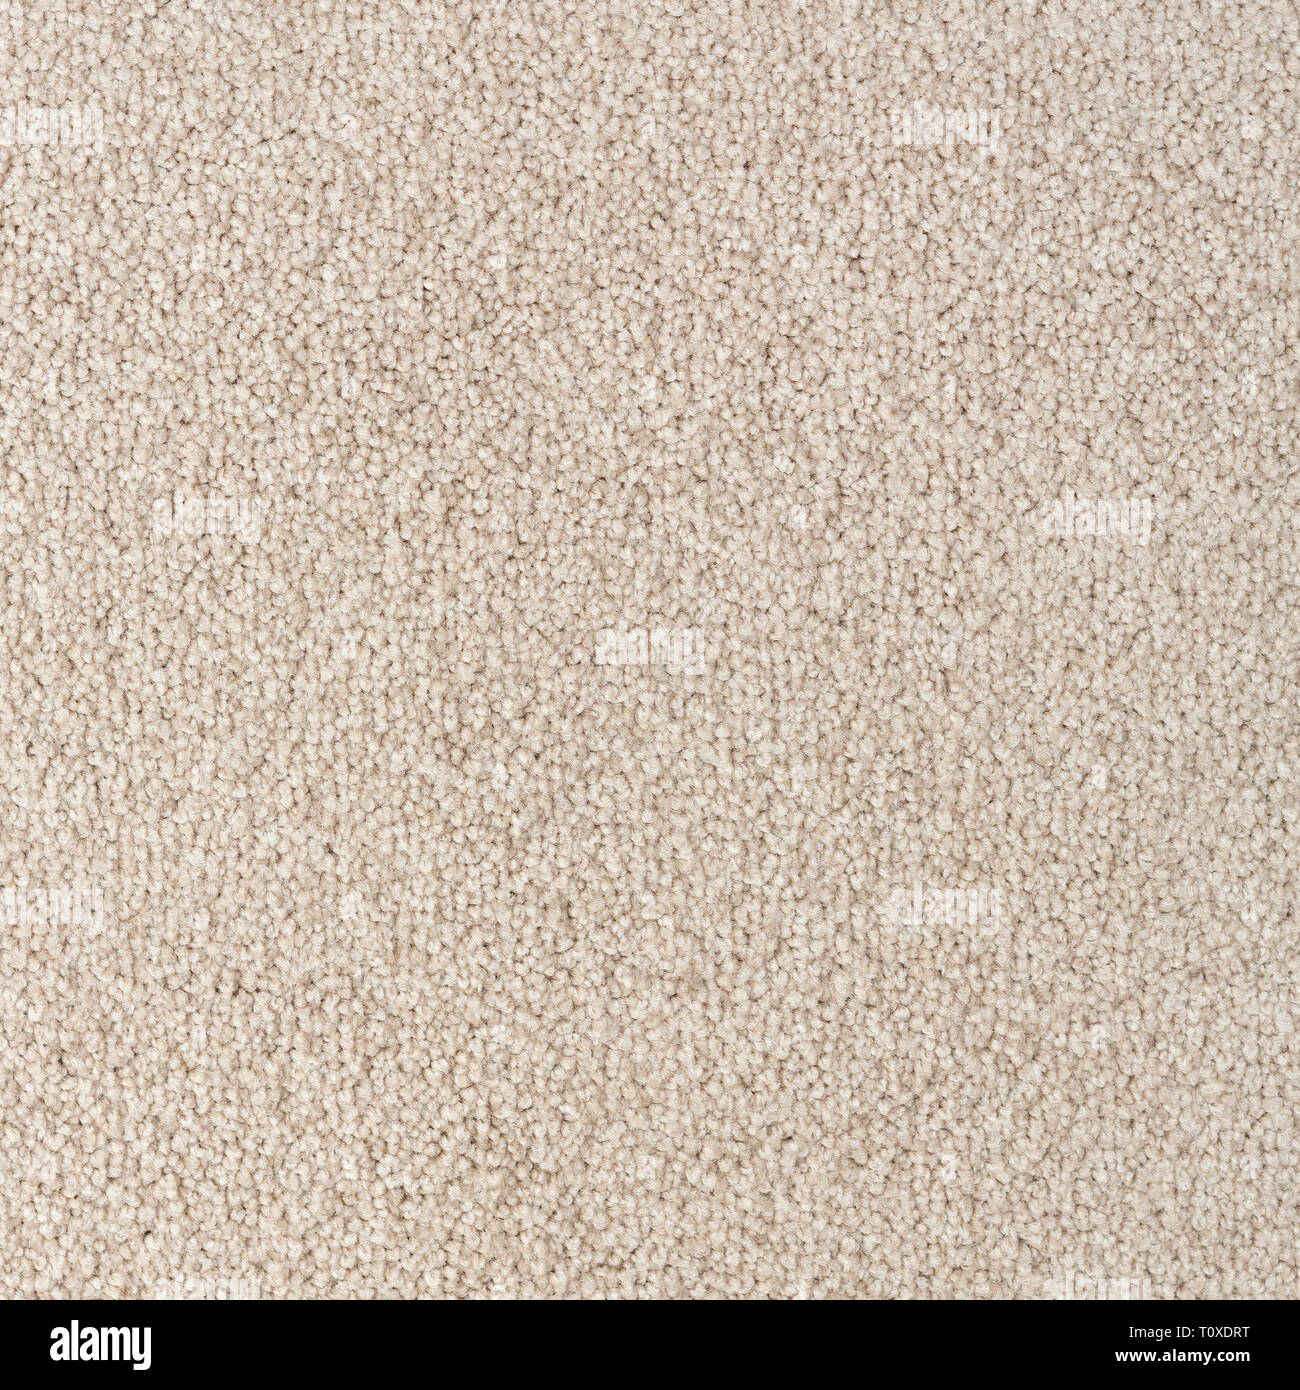 Textura de alfombras con pelo corto Foto de stock